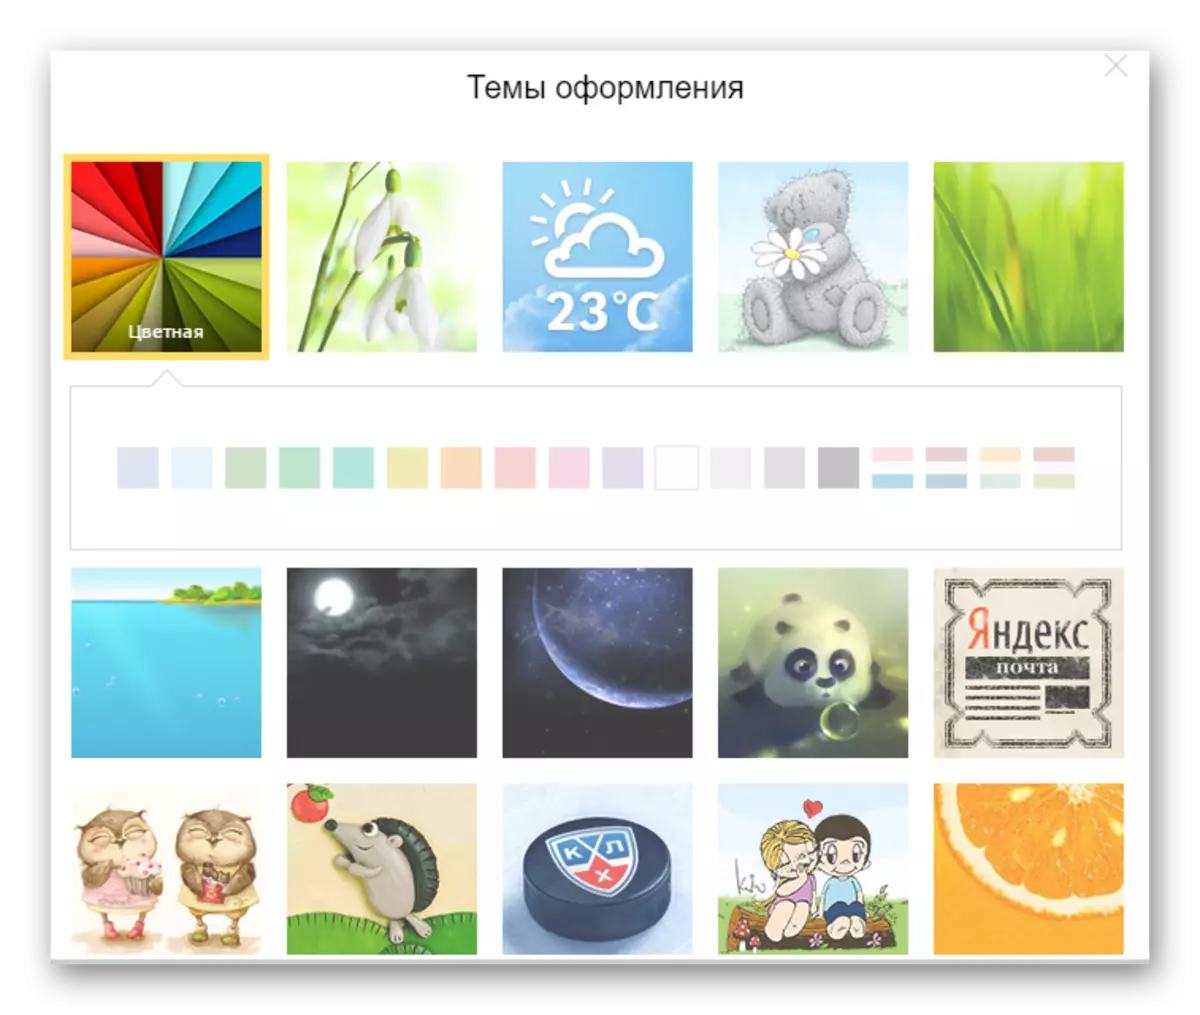 Яндекс почтада теркәлү темасын булдыру